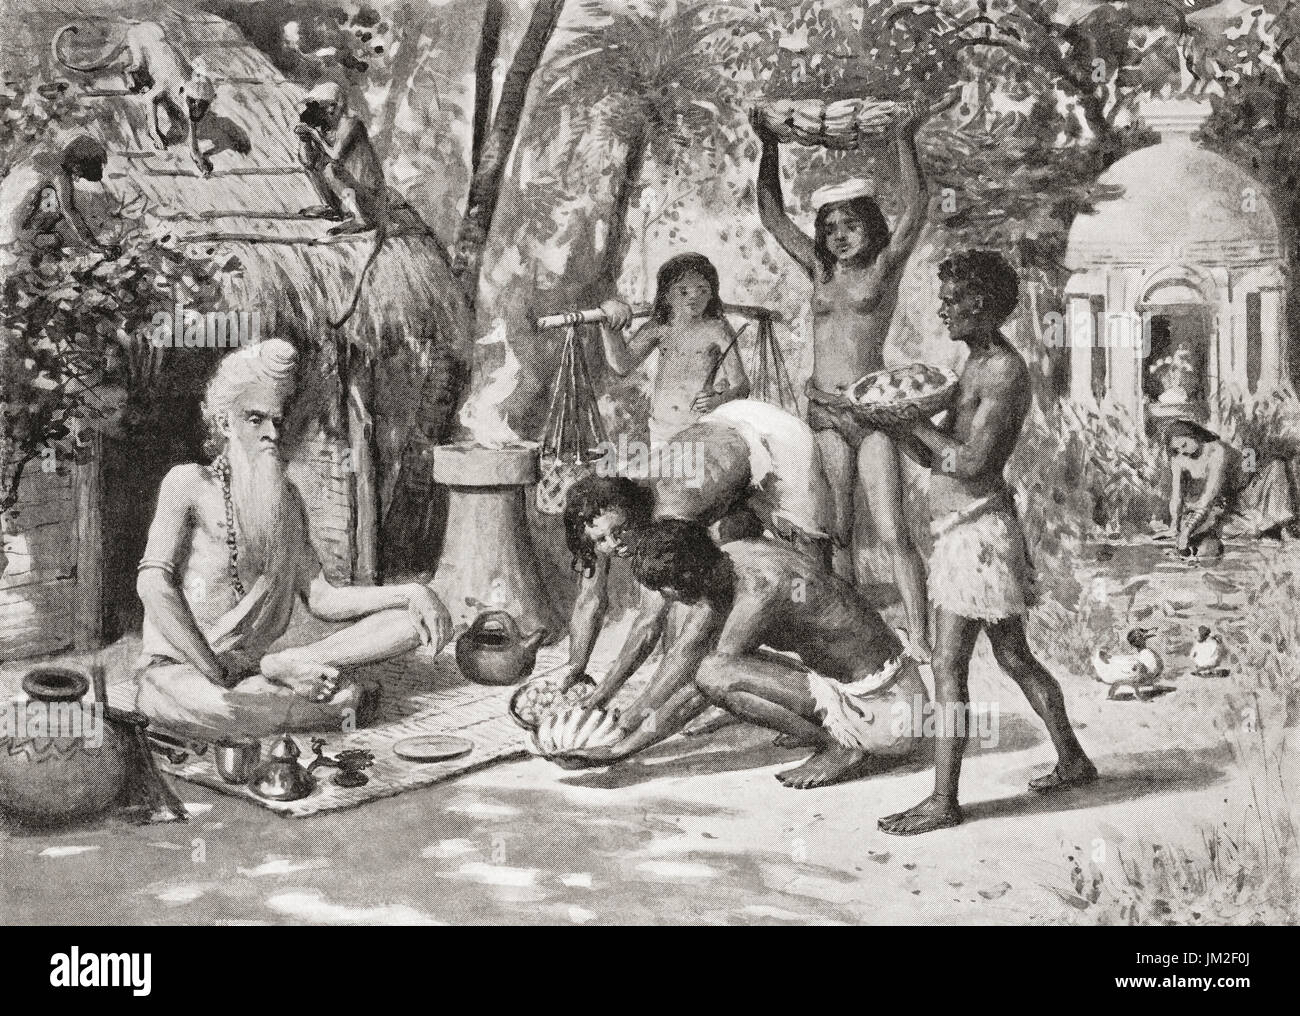 Ein Einsiedler im alten Indien, die hier zu sehen, Essen von der jüngeren Generation gebracht.  Hutchinson Geschichte der Nationen veröffentlichte 1915. Stockfoto